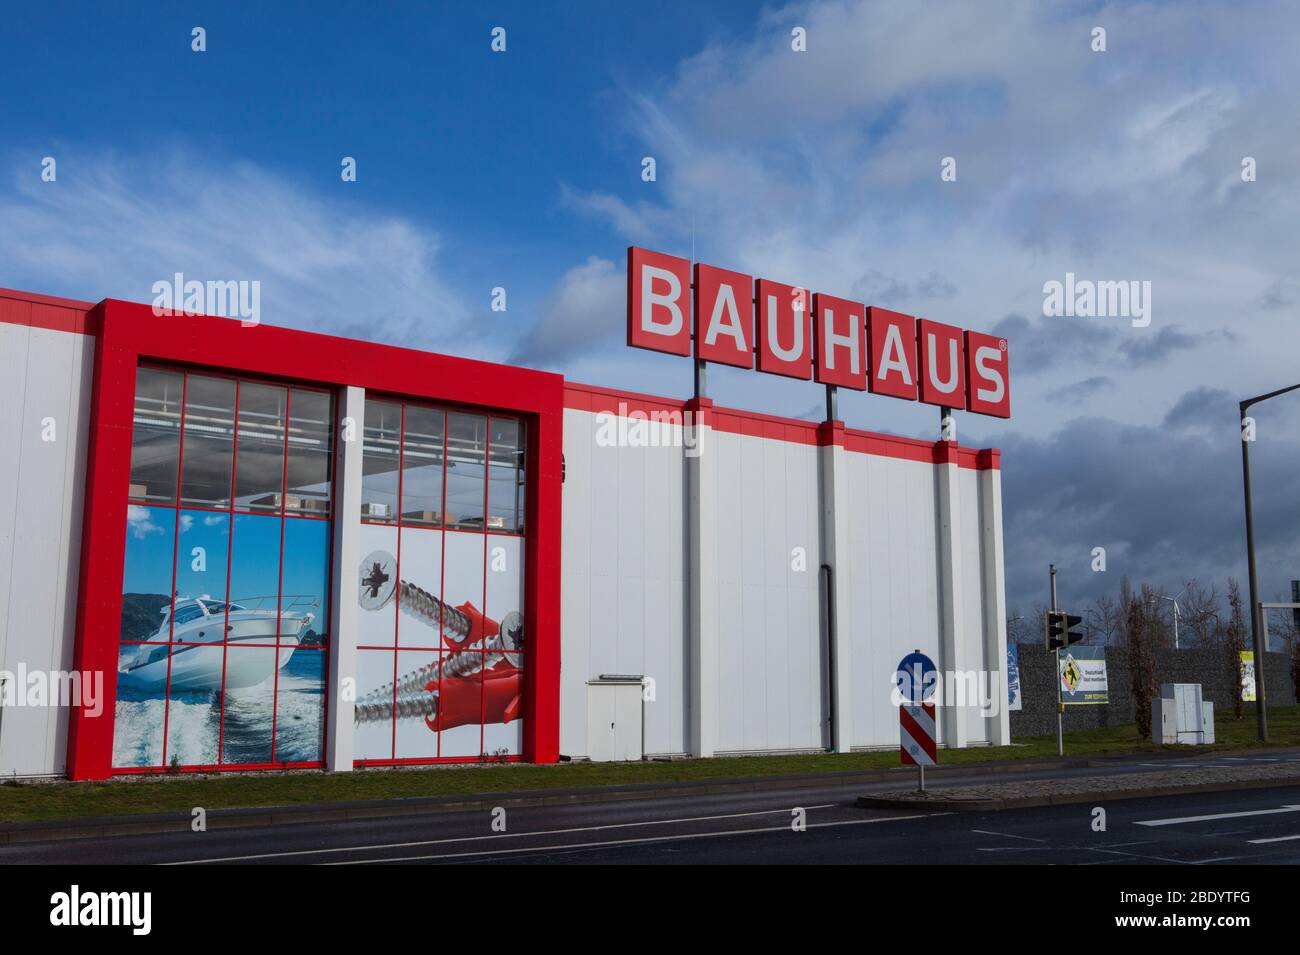 Leipzig, Allemagne-19 février 2020: Bauhaus est une chaîne de vente au détail paneuropéenne basée en Suisse qui propose des produits pour l'amélioration de la maison, le jardinage et la wor Banque D'Images